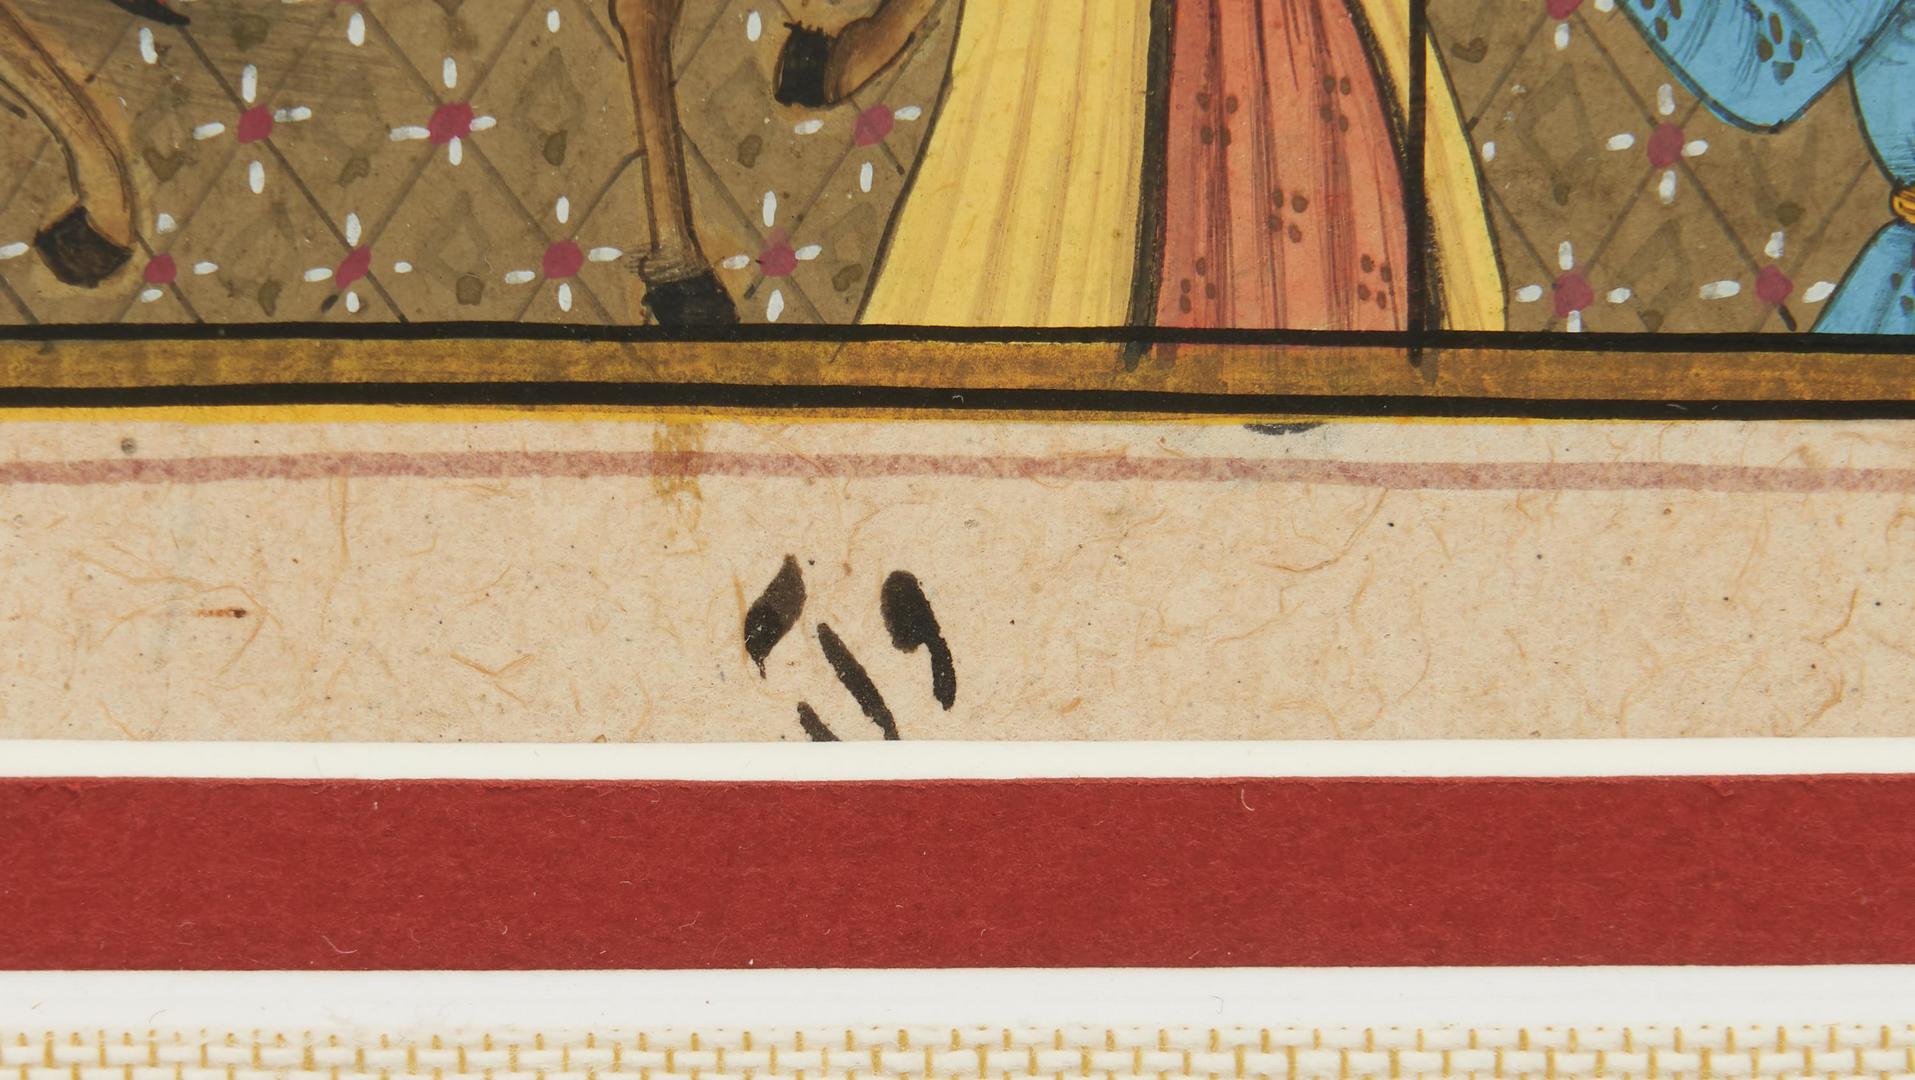 Lot 303: Four Mughal Illuminated Manuscript Paintings